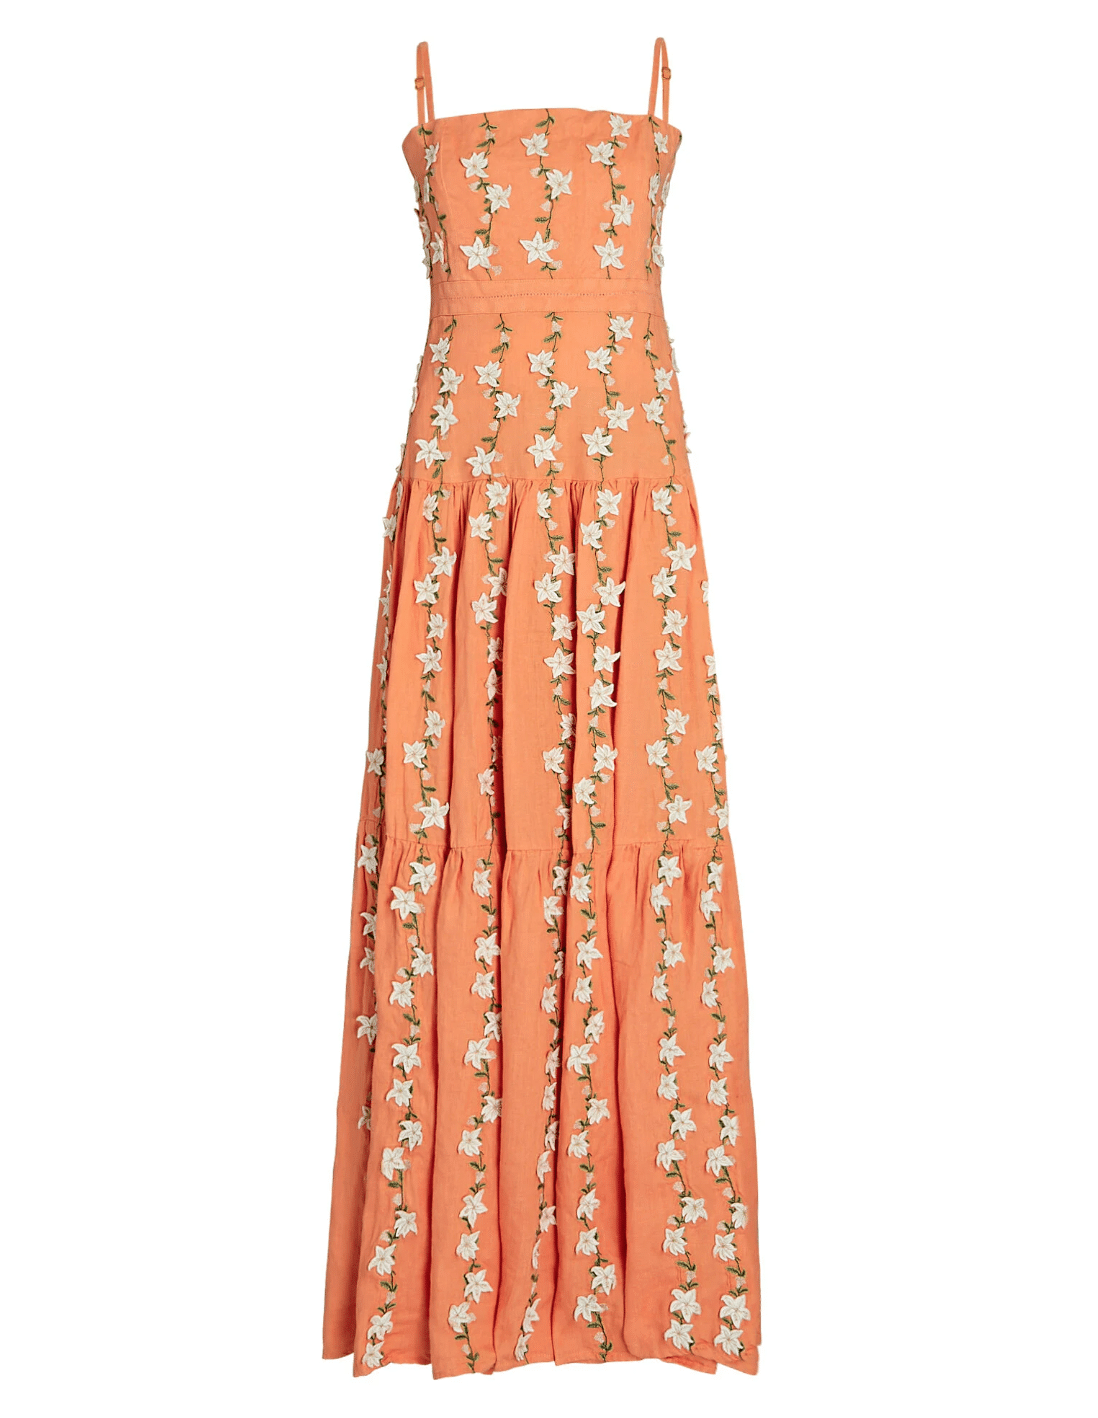 Lima Floral-Appliquéd Linen Maxi Dress